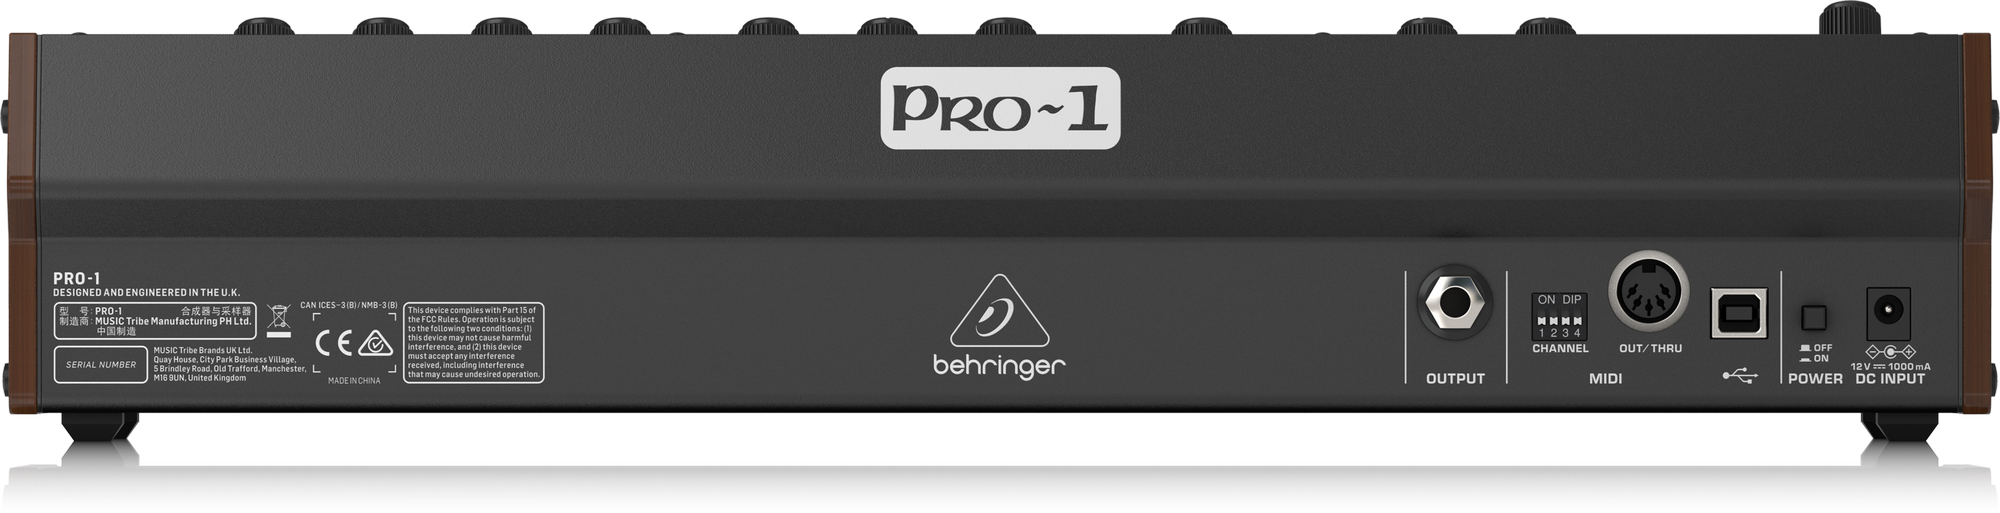 PRO-1 - 製品一覧 - ベリンガー公式ホームページ